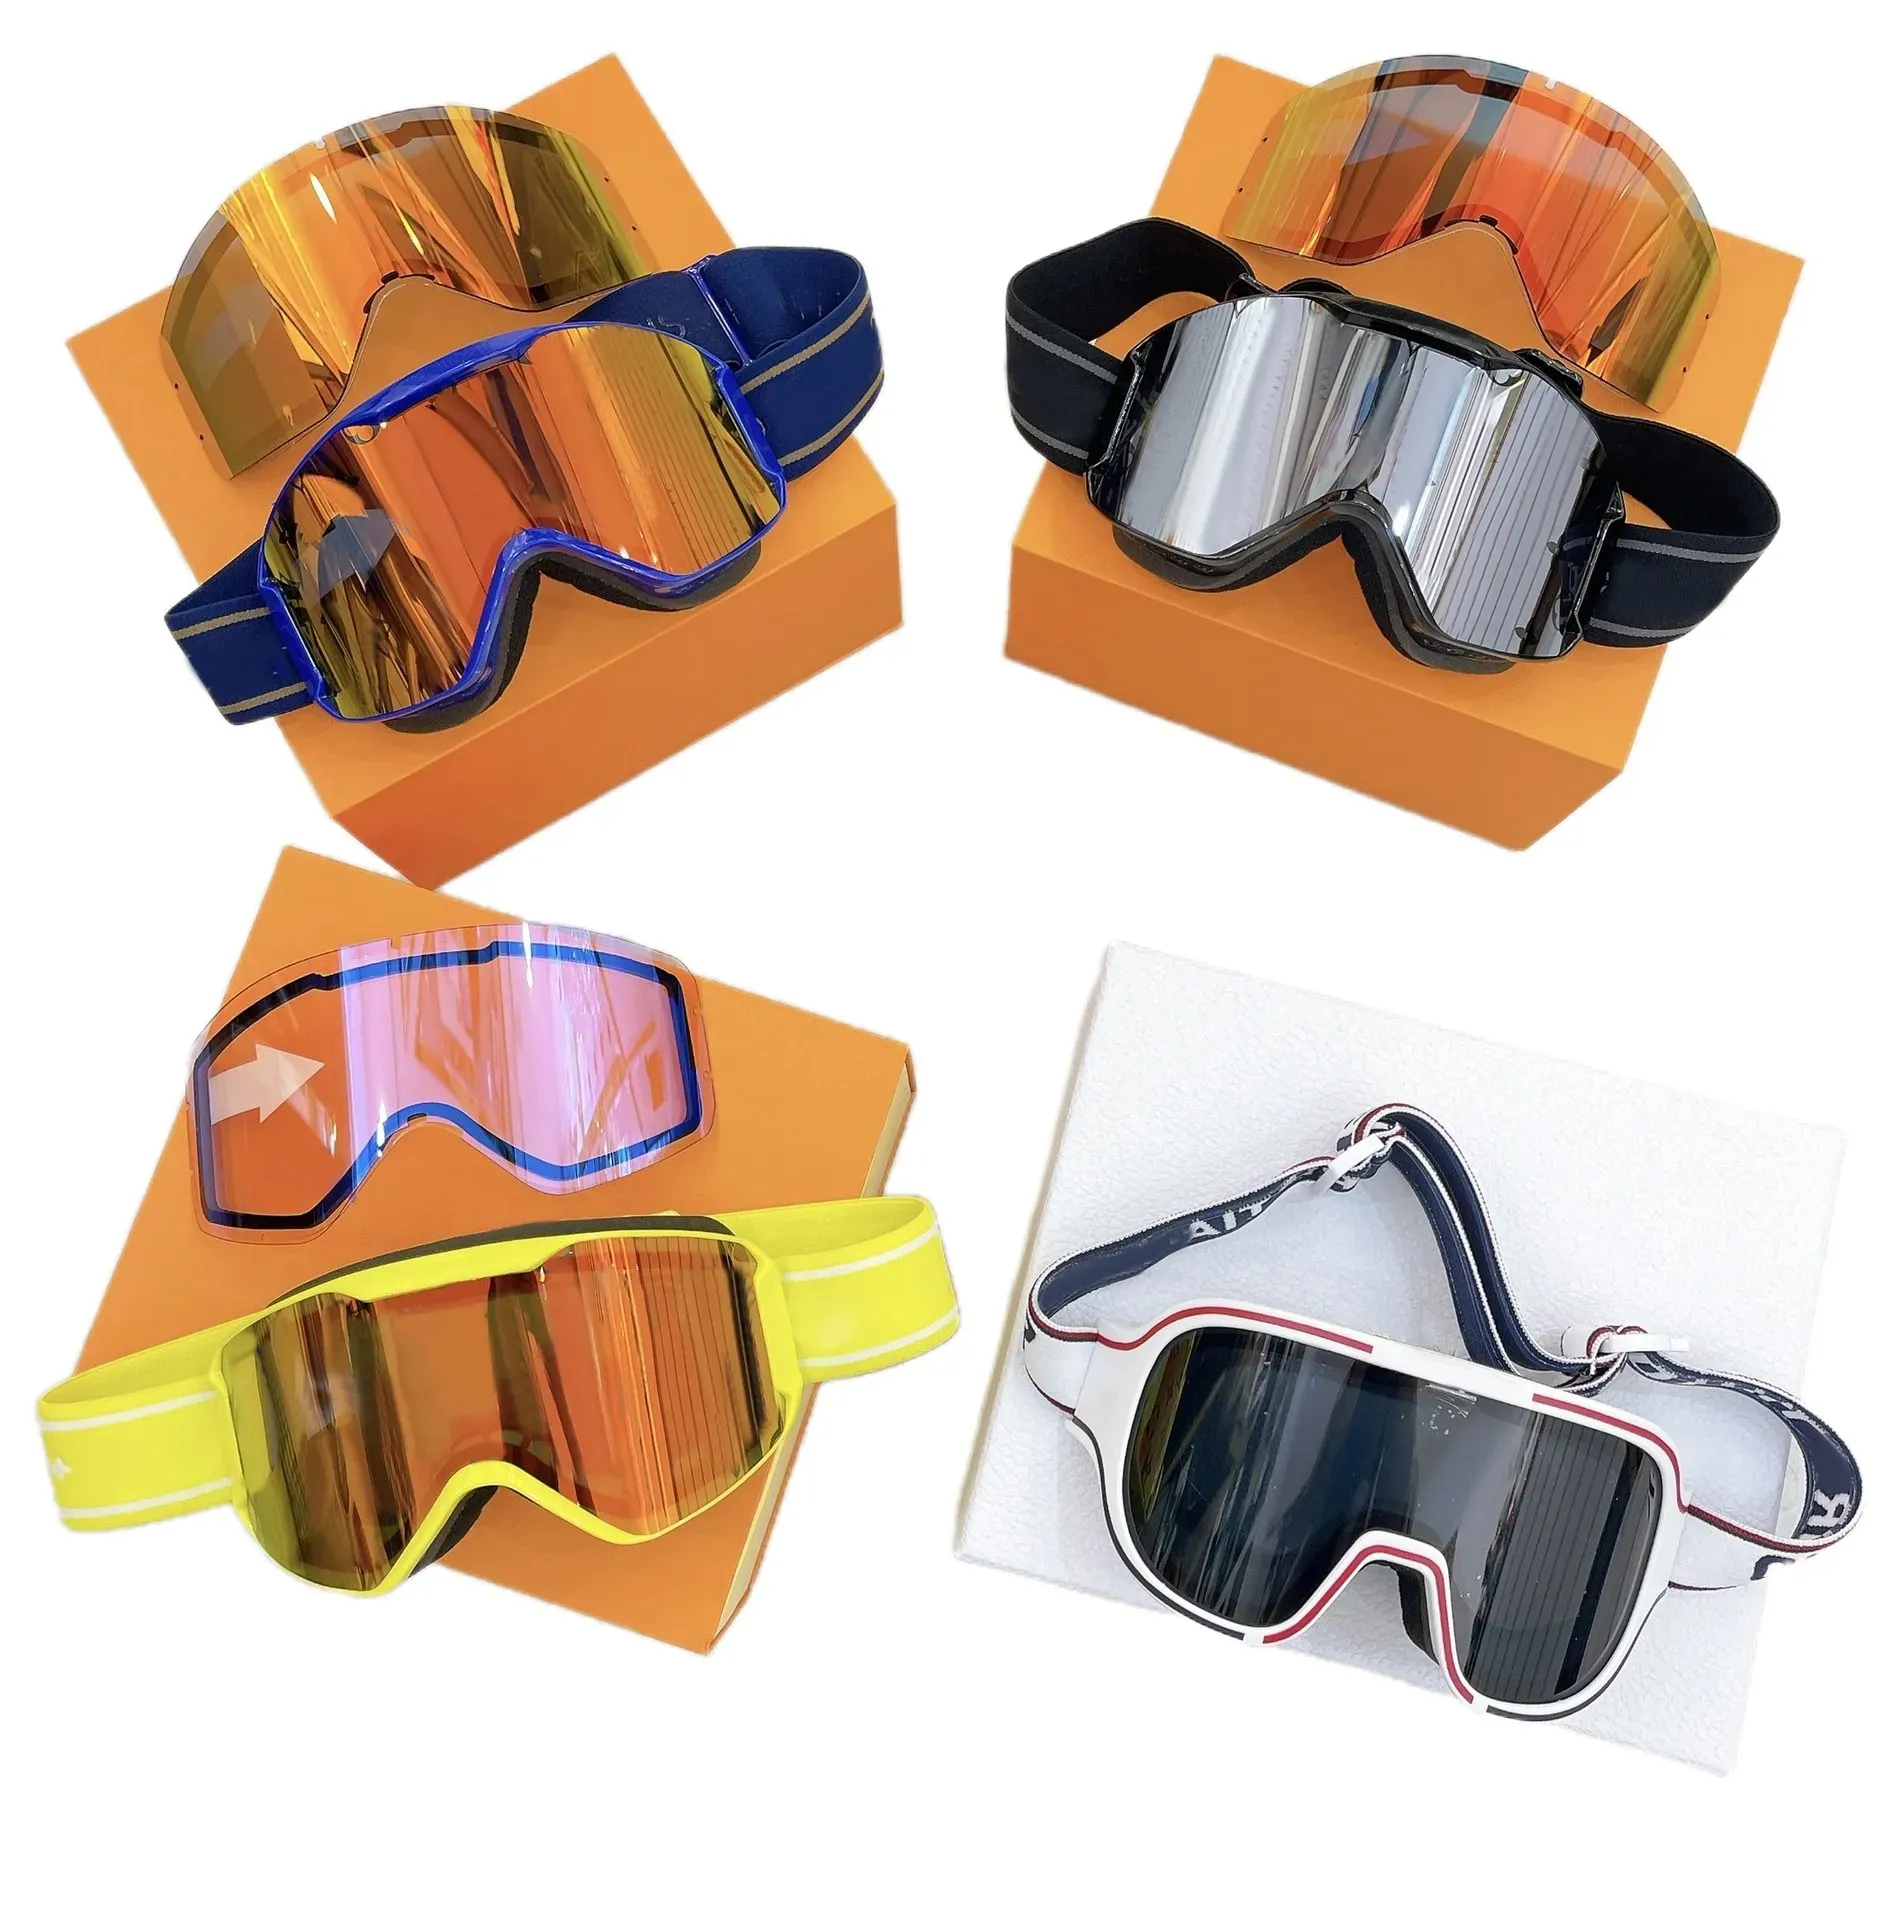 Солнцезащитные очки для женщин Дизайнерские лыжные очки Очки реальности Очки Мужчины Женские регулируемые роскошные большие полнокадровые зимние спортивные солнцезащитные очки с футляром EMQ3